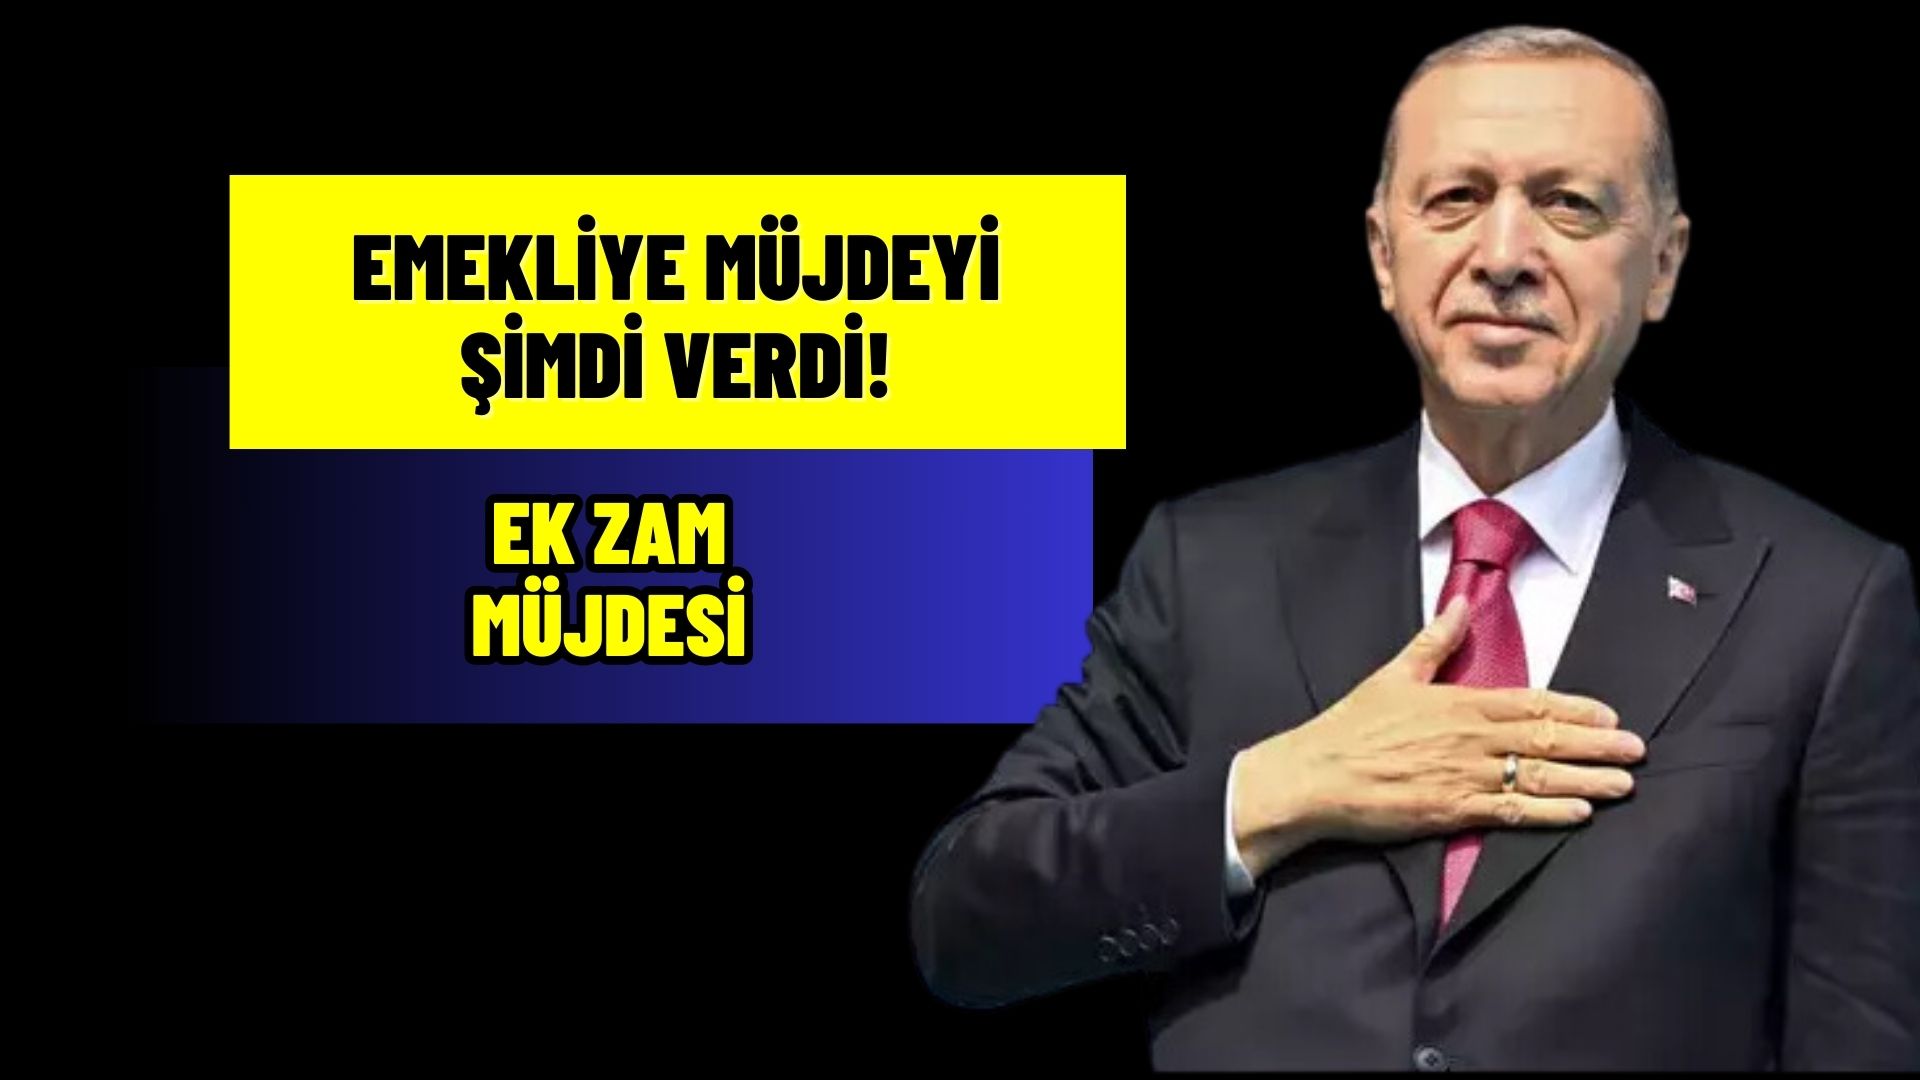 Cumhurbaşkanı Erdoğan Emeklilere müjdeyi şimdi verdi! Ek ZAM müjdesi